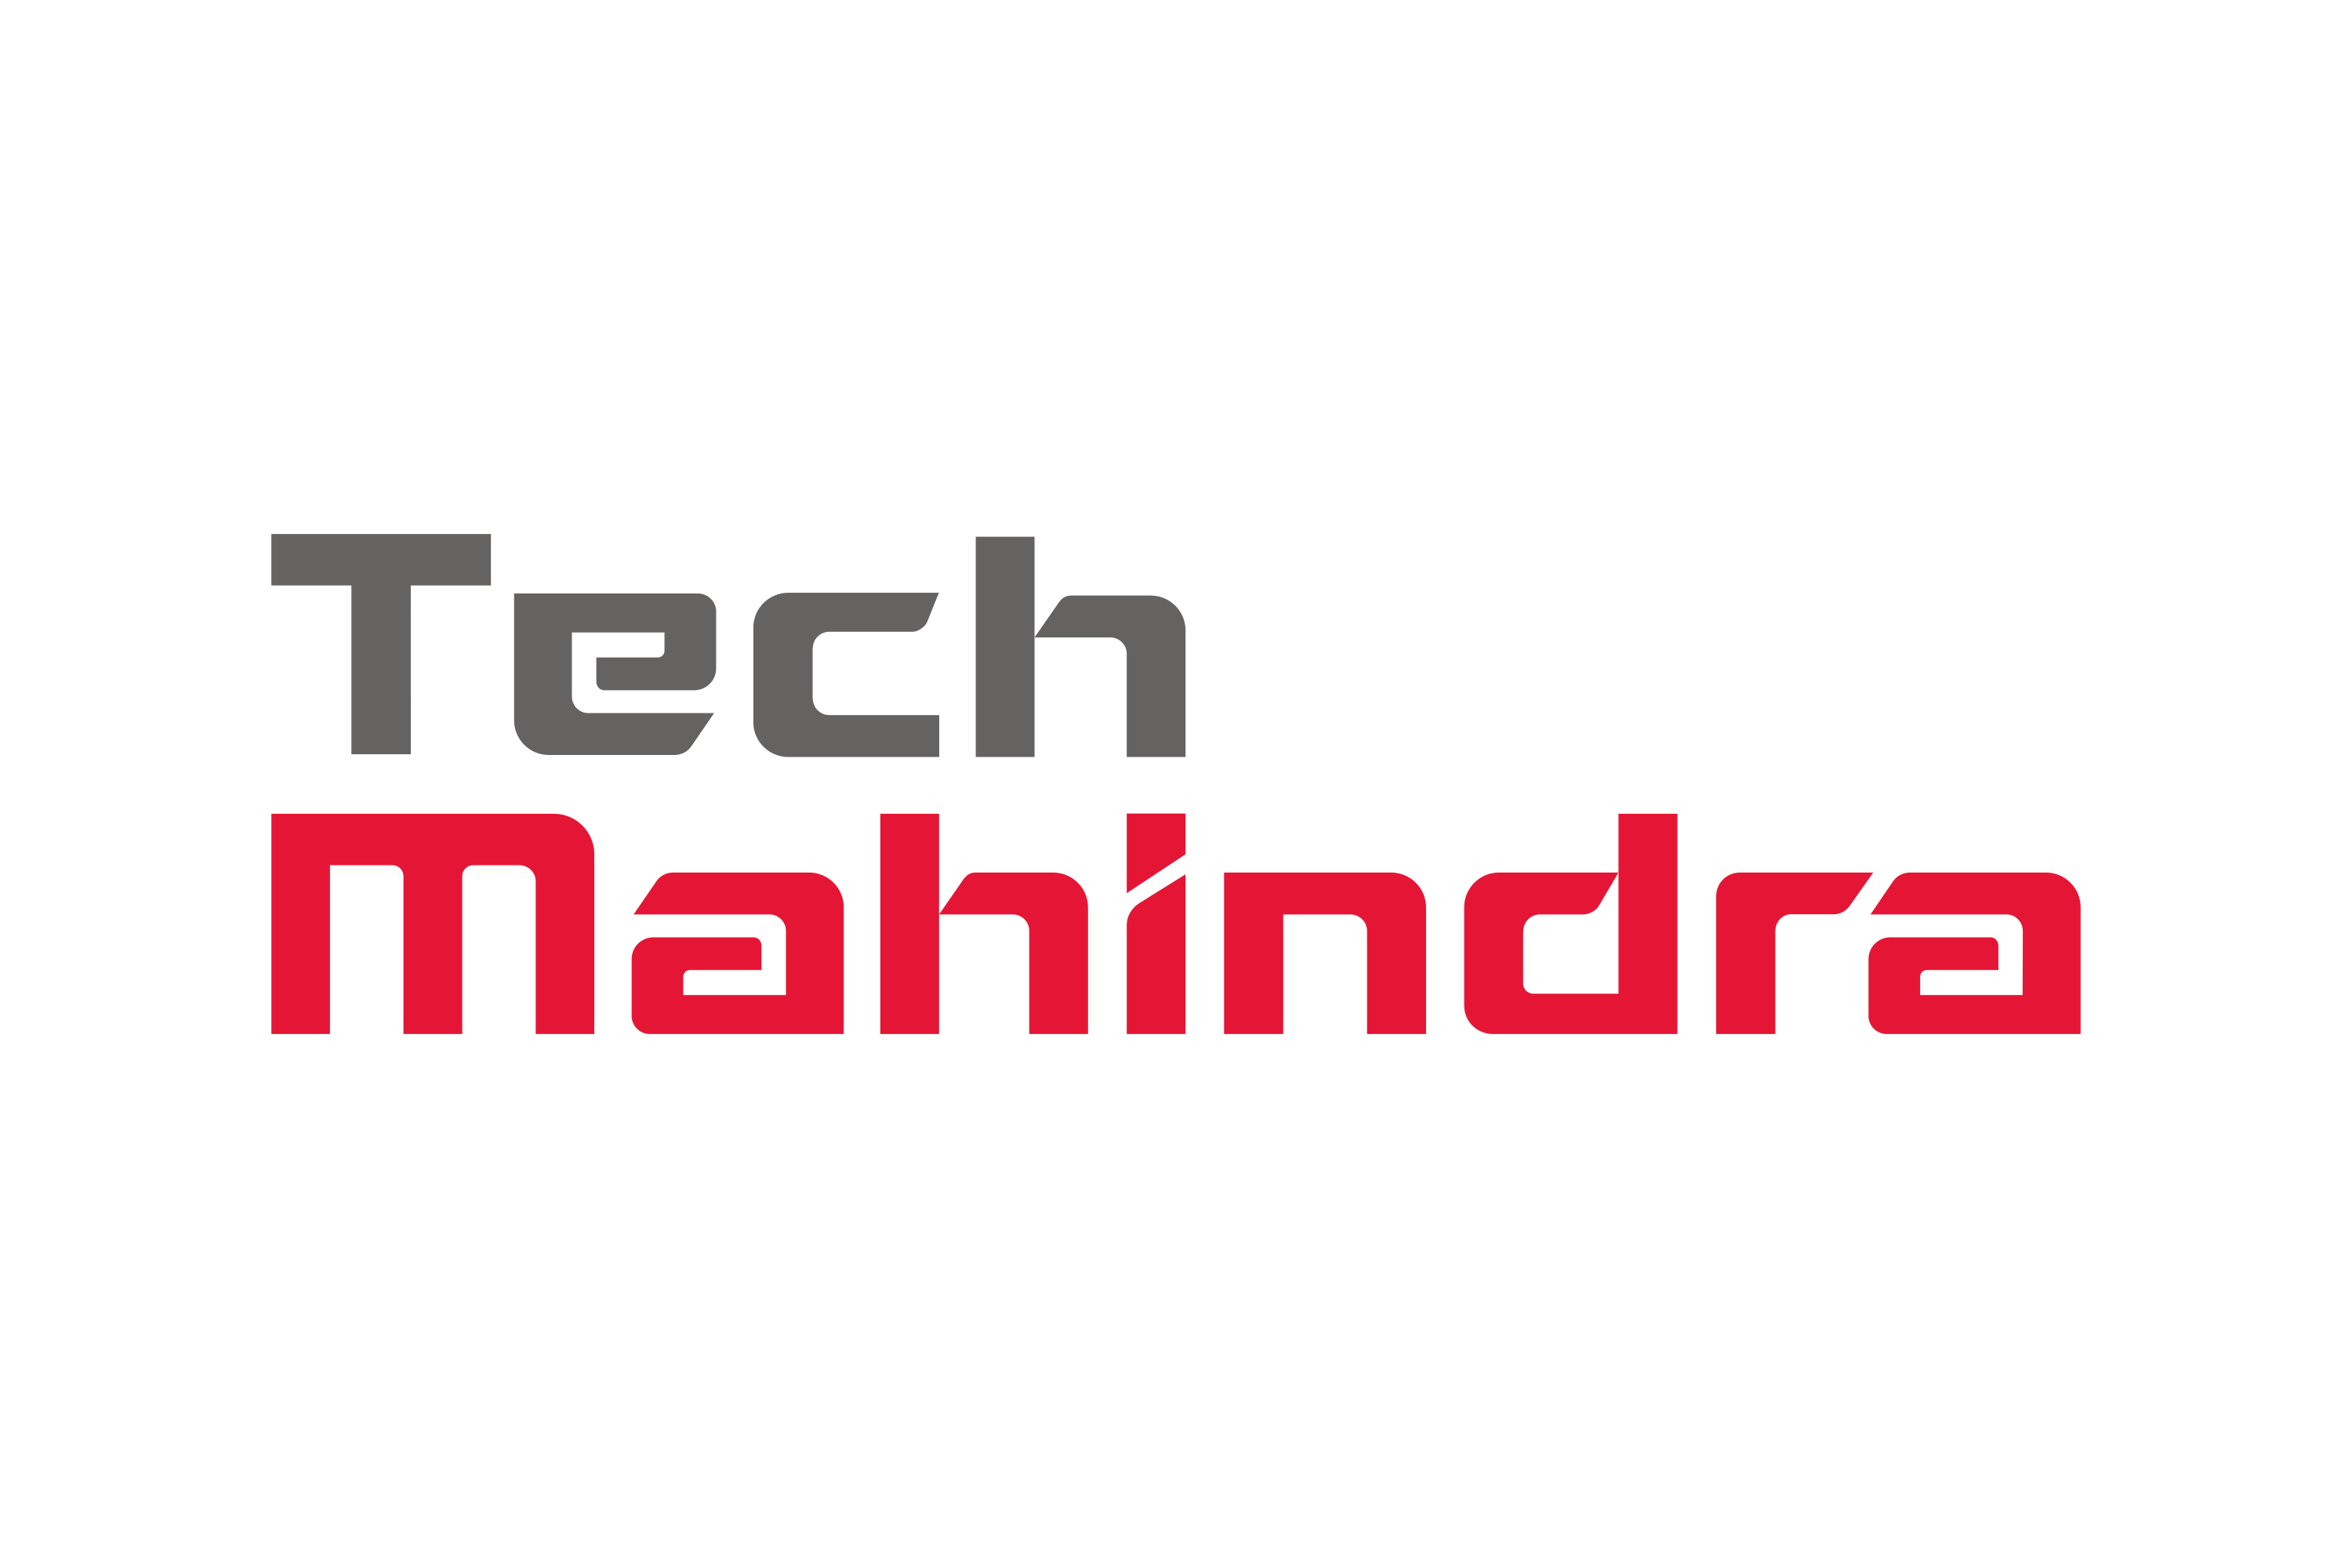  Tech Mahindra  